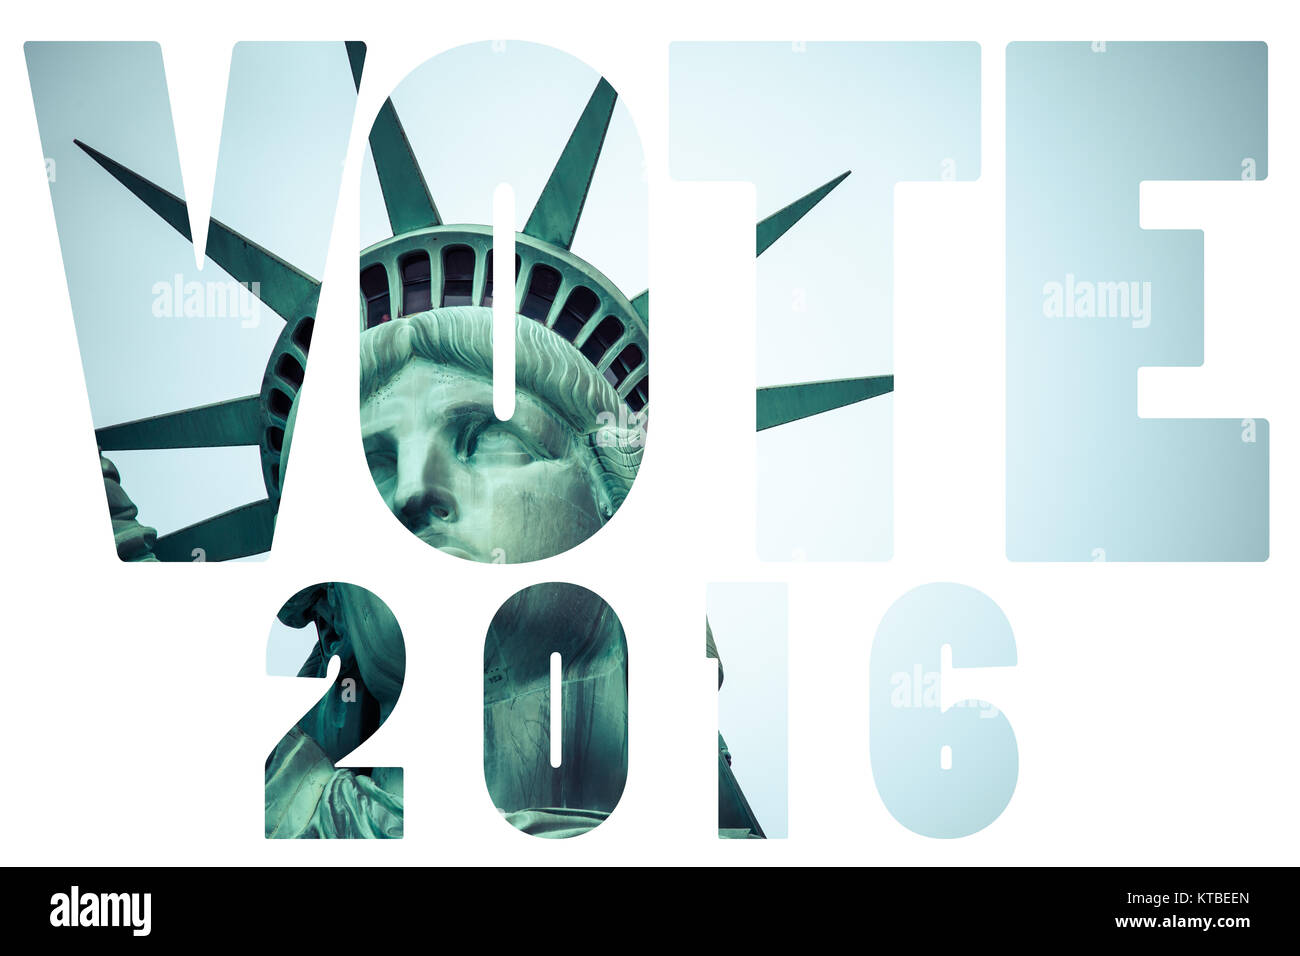 Wort wahl Abstimmung 2016 über die Freiheitsstatue in New York City Stockfoto